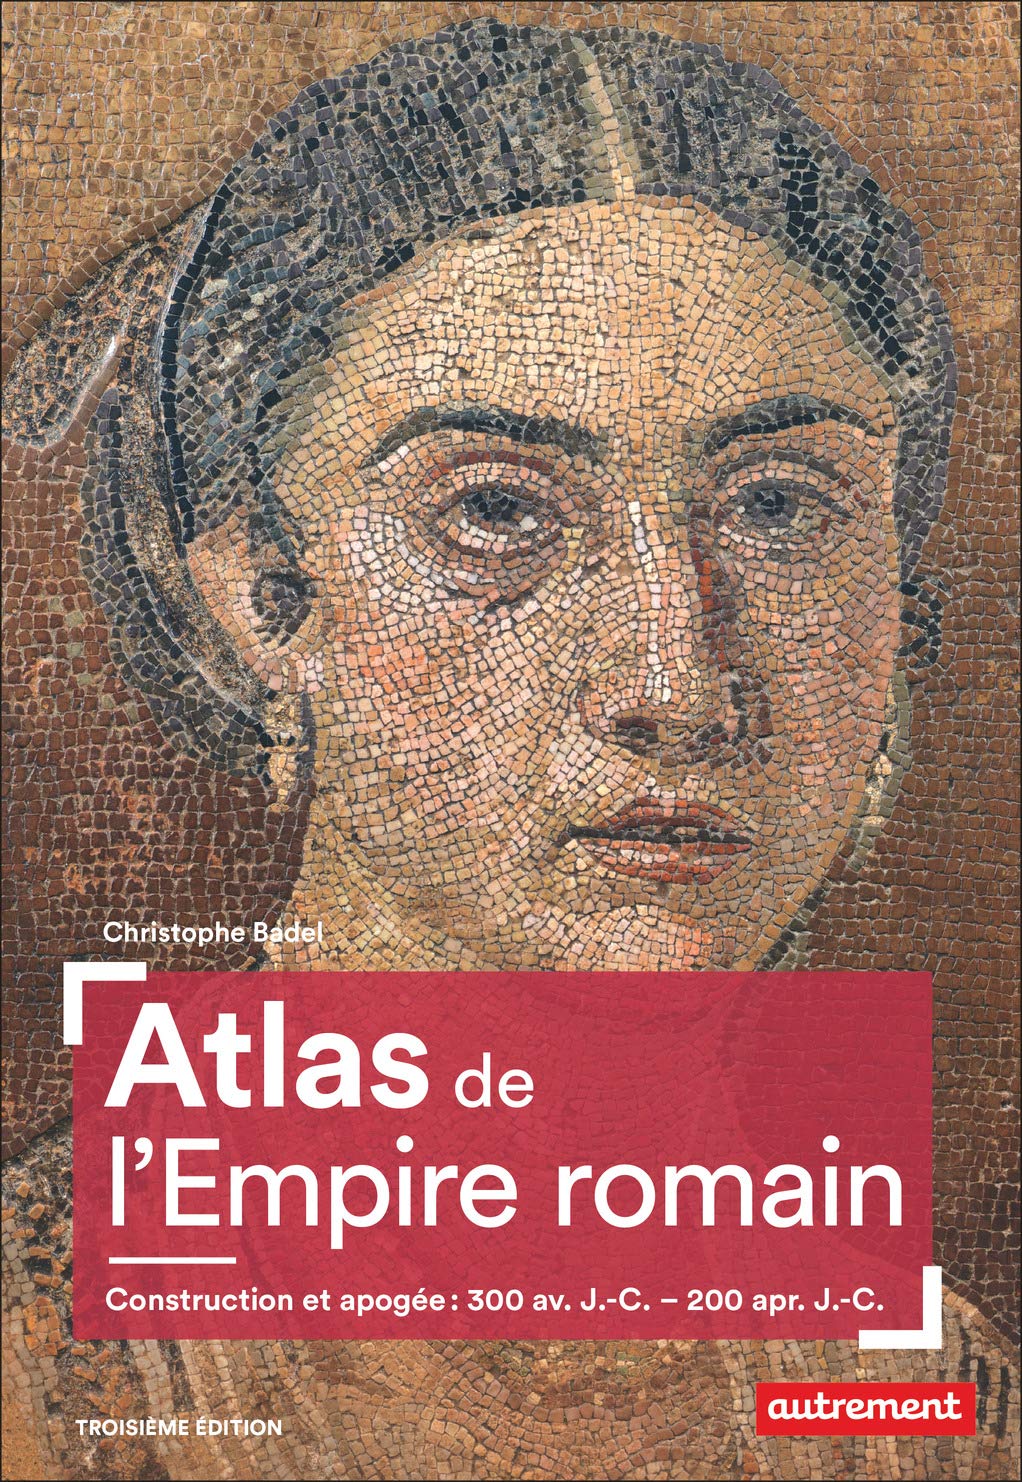 Atlas de l'Empire romain. Construction et apogée : 300 av. J.-C. - 200 apr. J.-C., 2020, 3e éd., 96 p.